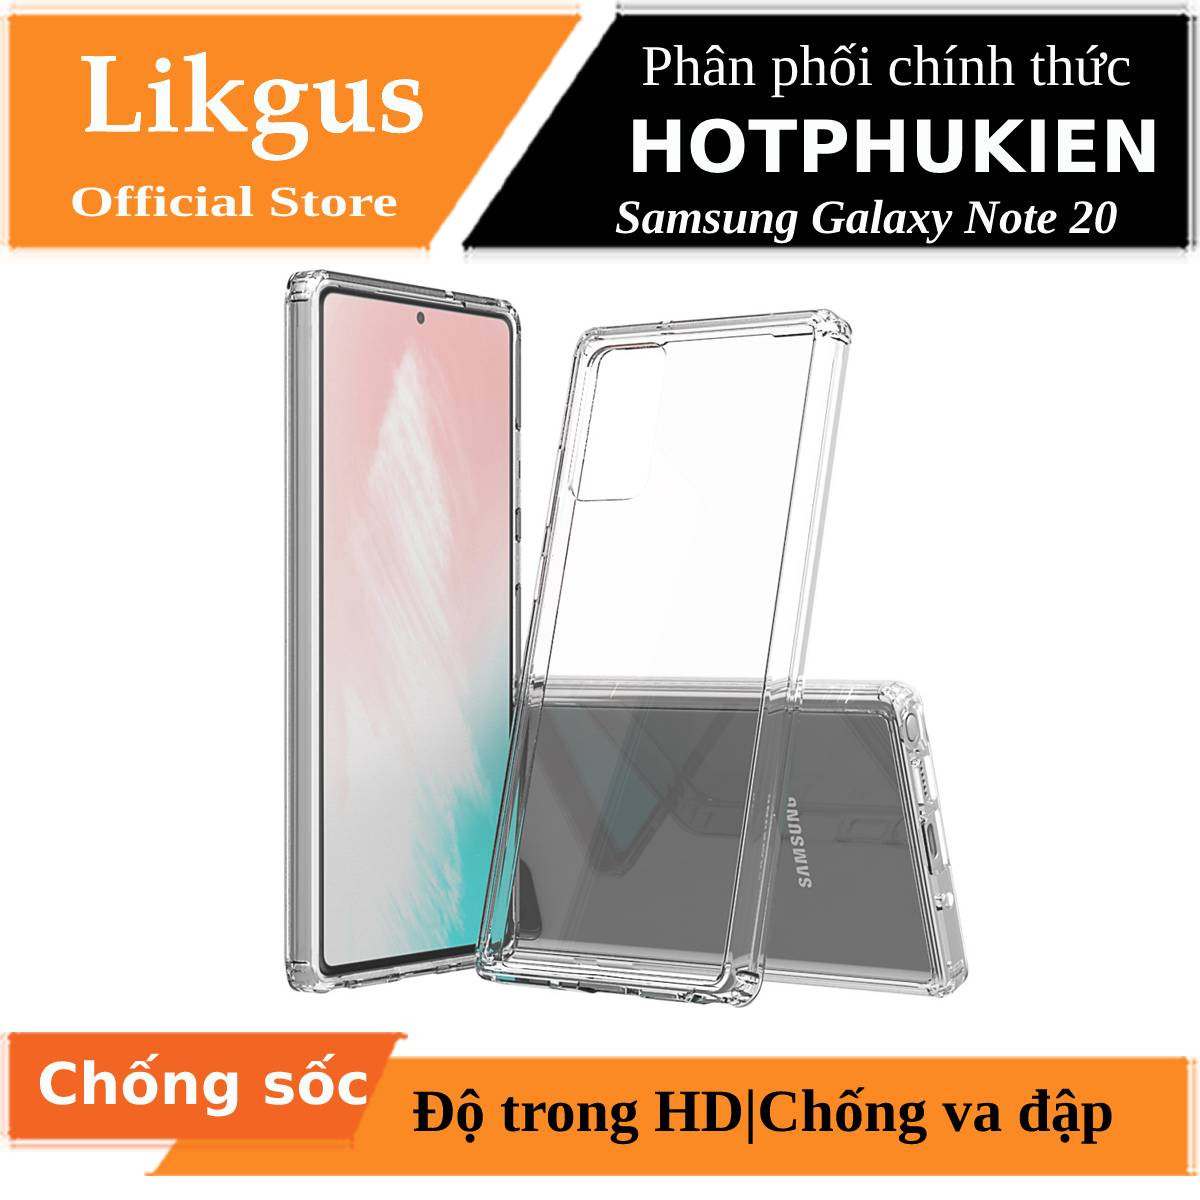 Ốp lưng chống sốc trong suốt cho Samsung Galaxy Note 20 hiệu Likgus Crashproof